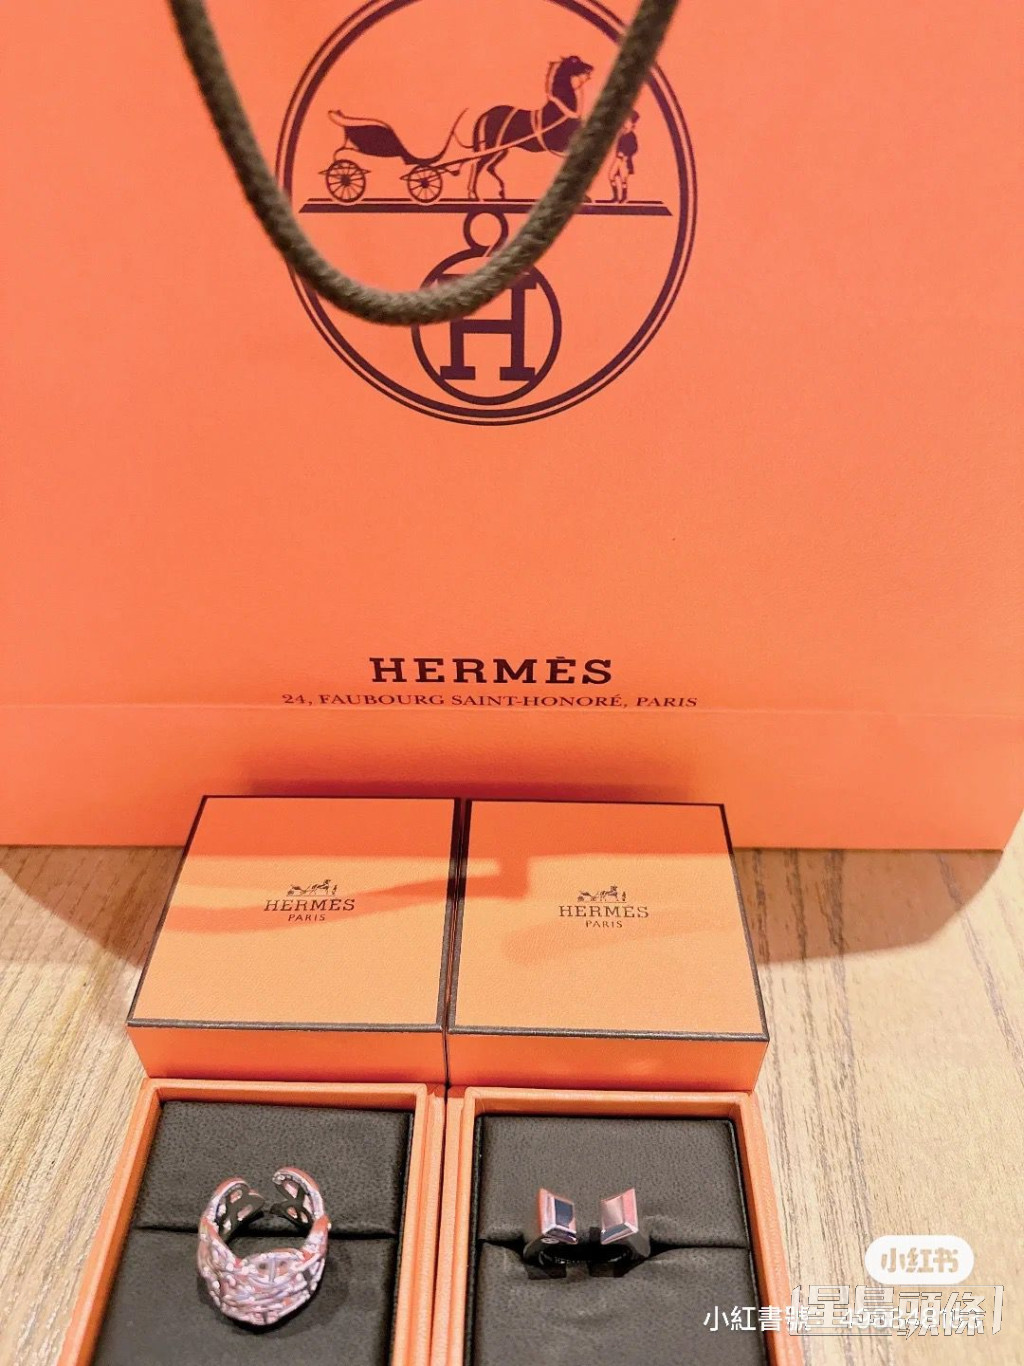 王妤嫻日前晒出Hermès新戰利品。